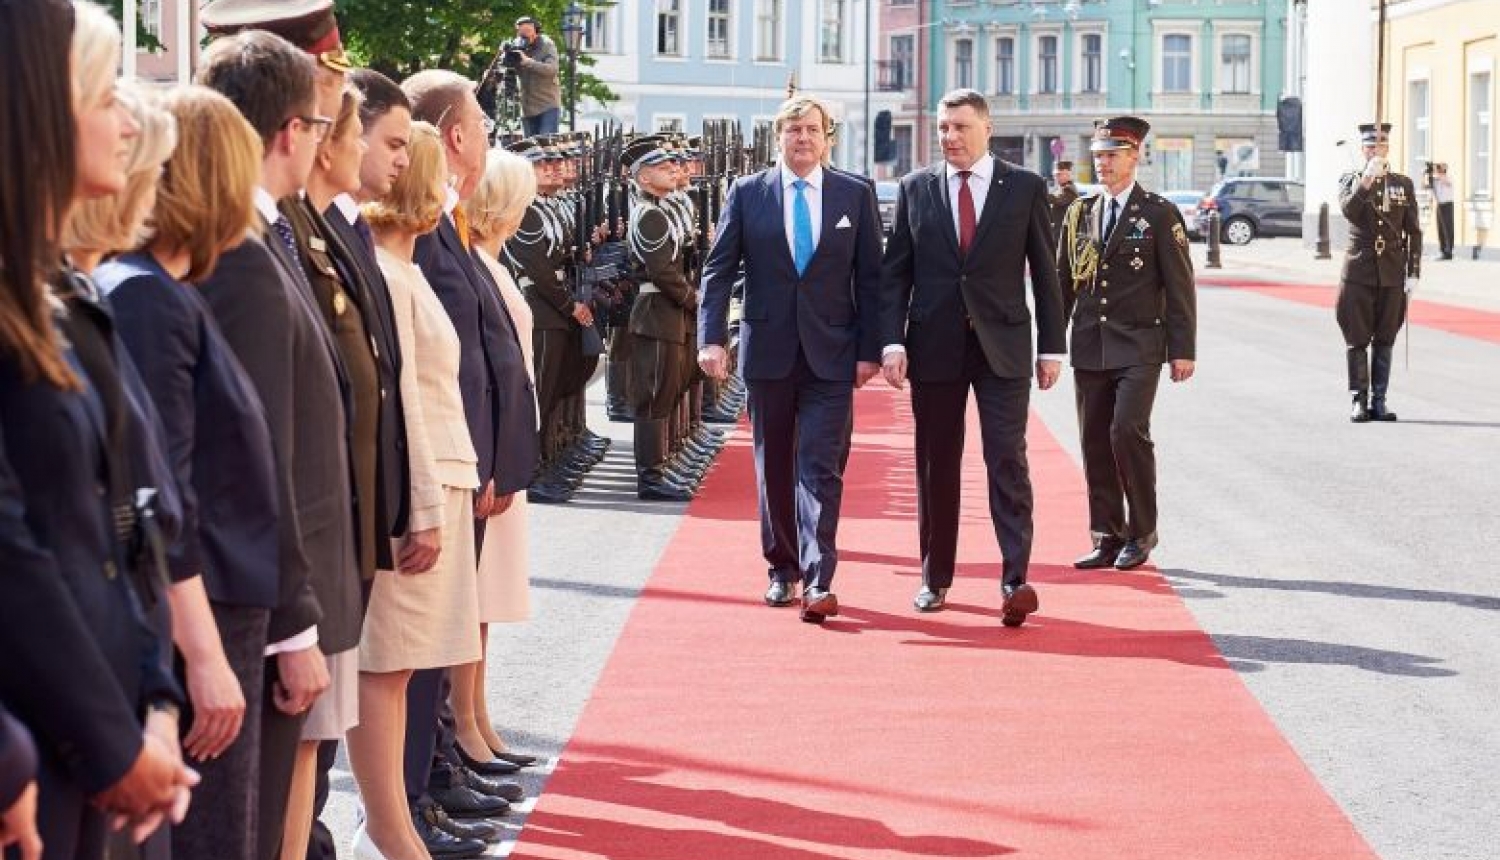 Valsts prezidenta Raimonda Vējoņa paziņojums presei  pēc tikšanās ar Viņa Majestāti Nīderlandes karali  Vilemu Aleksandru